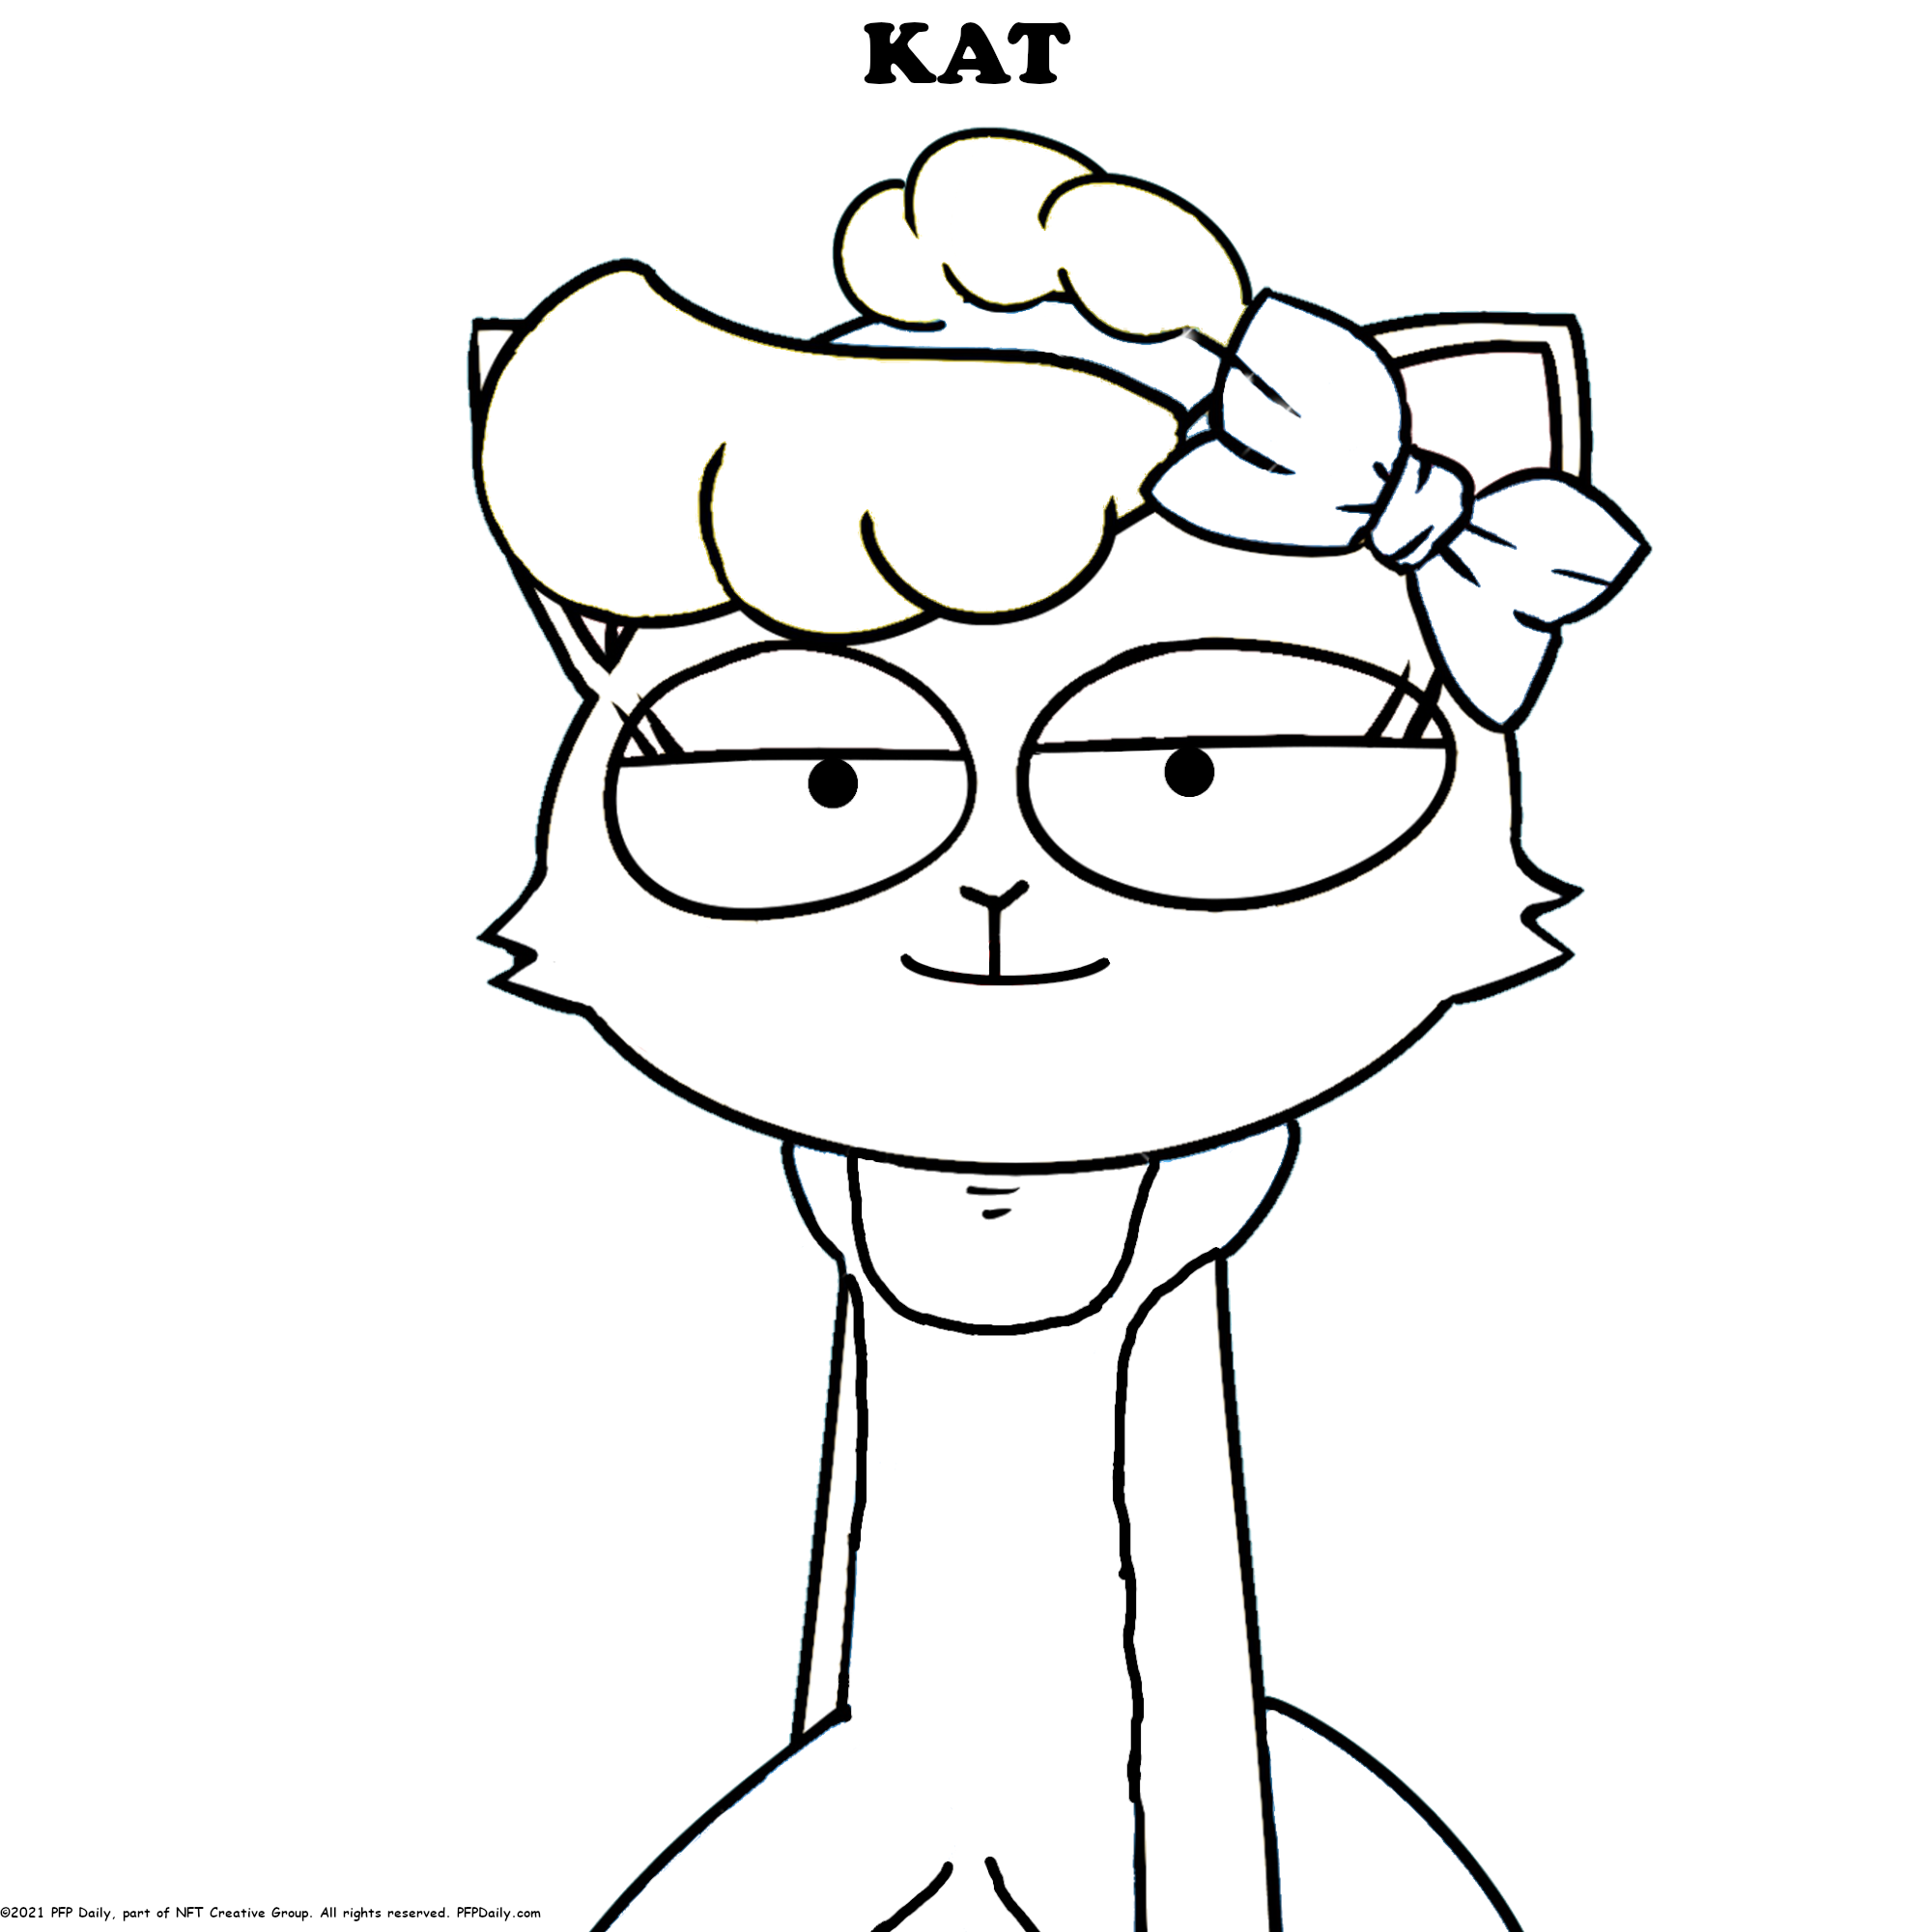 Kat2